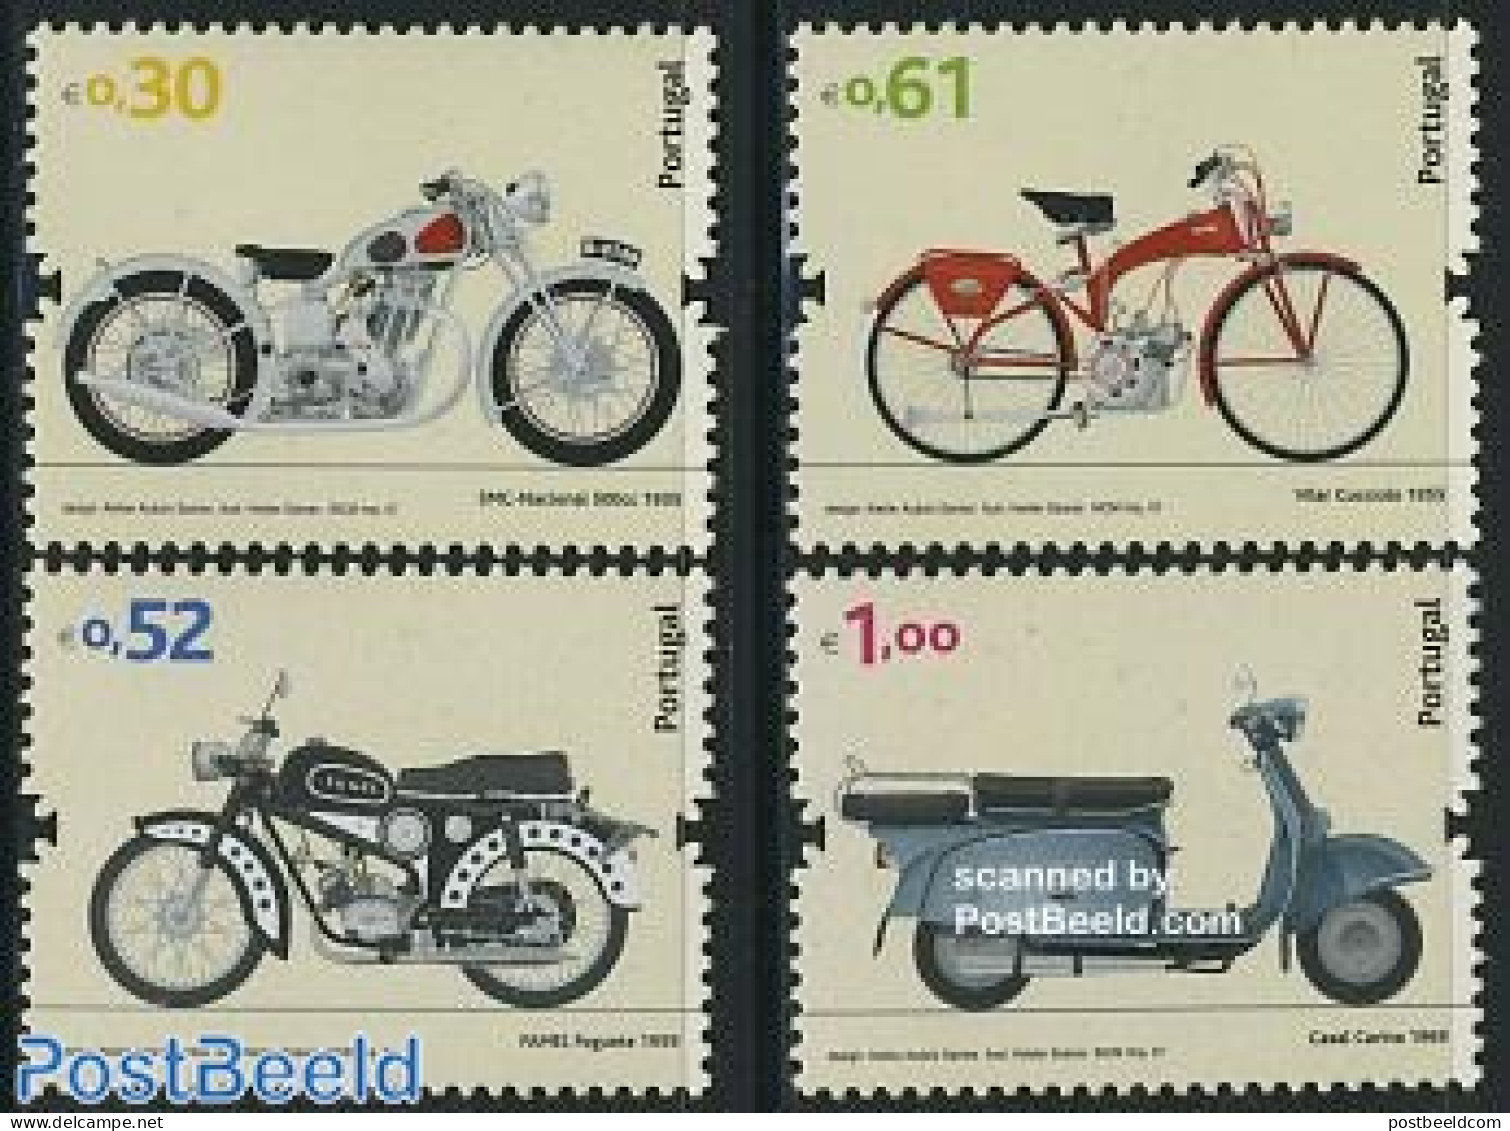 Portugal 2007 Motorcycles 4v (SMC,Famel,Vilar,Casal), Mint NH, Transport - Motorcycles - Unused Stamps